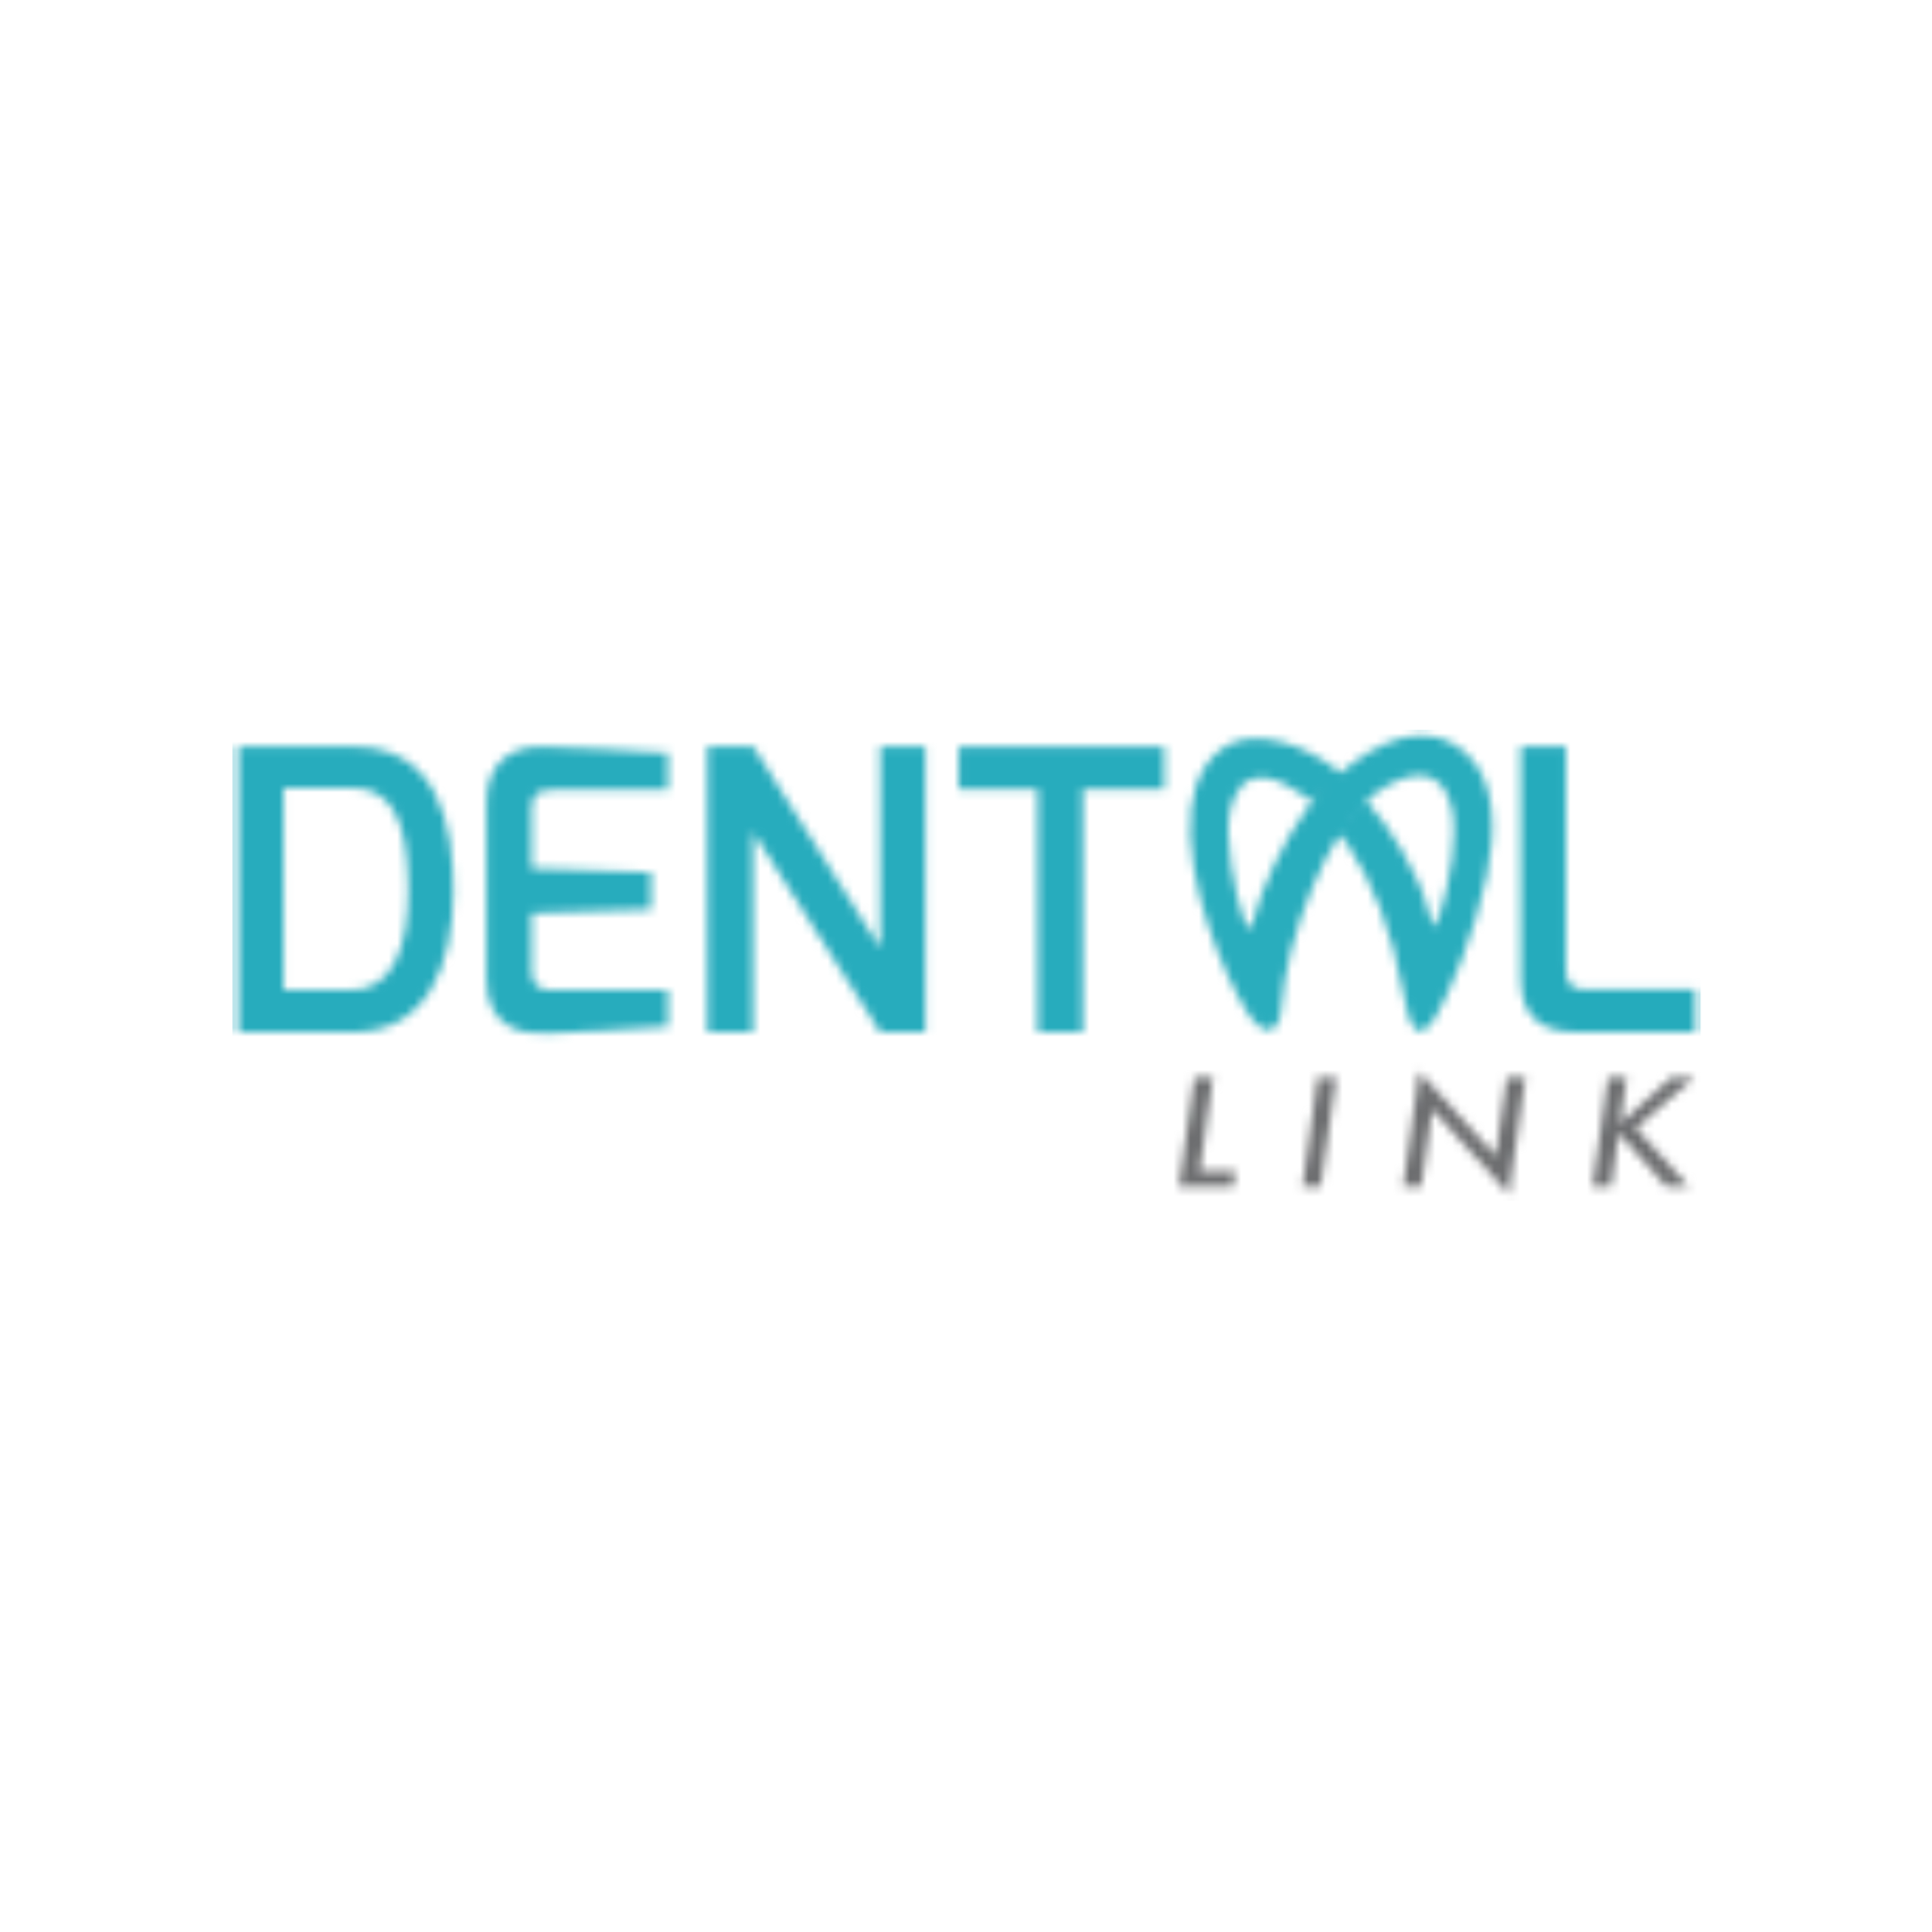 07-dentallink_logo